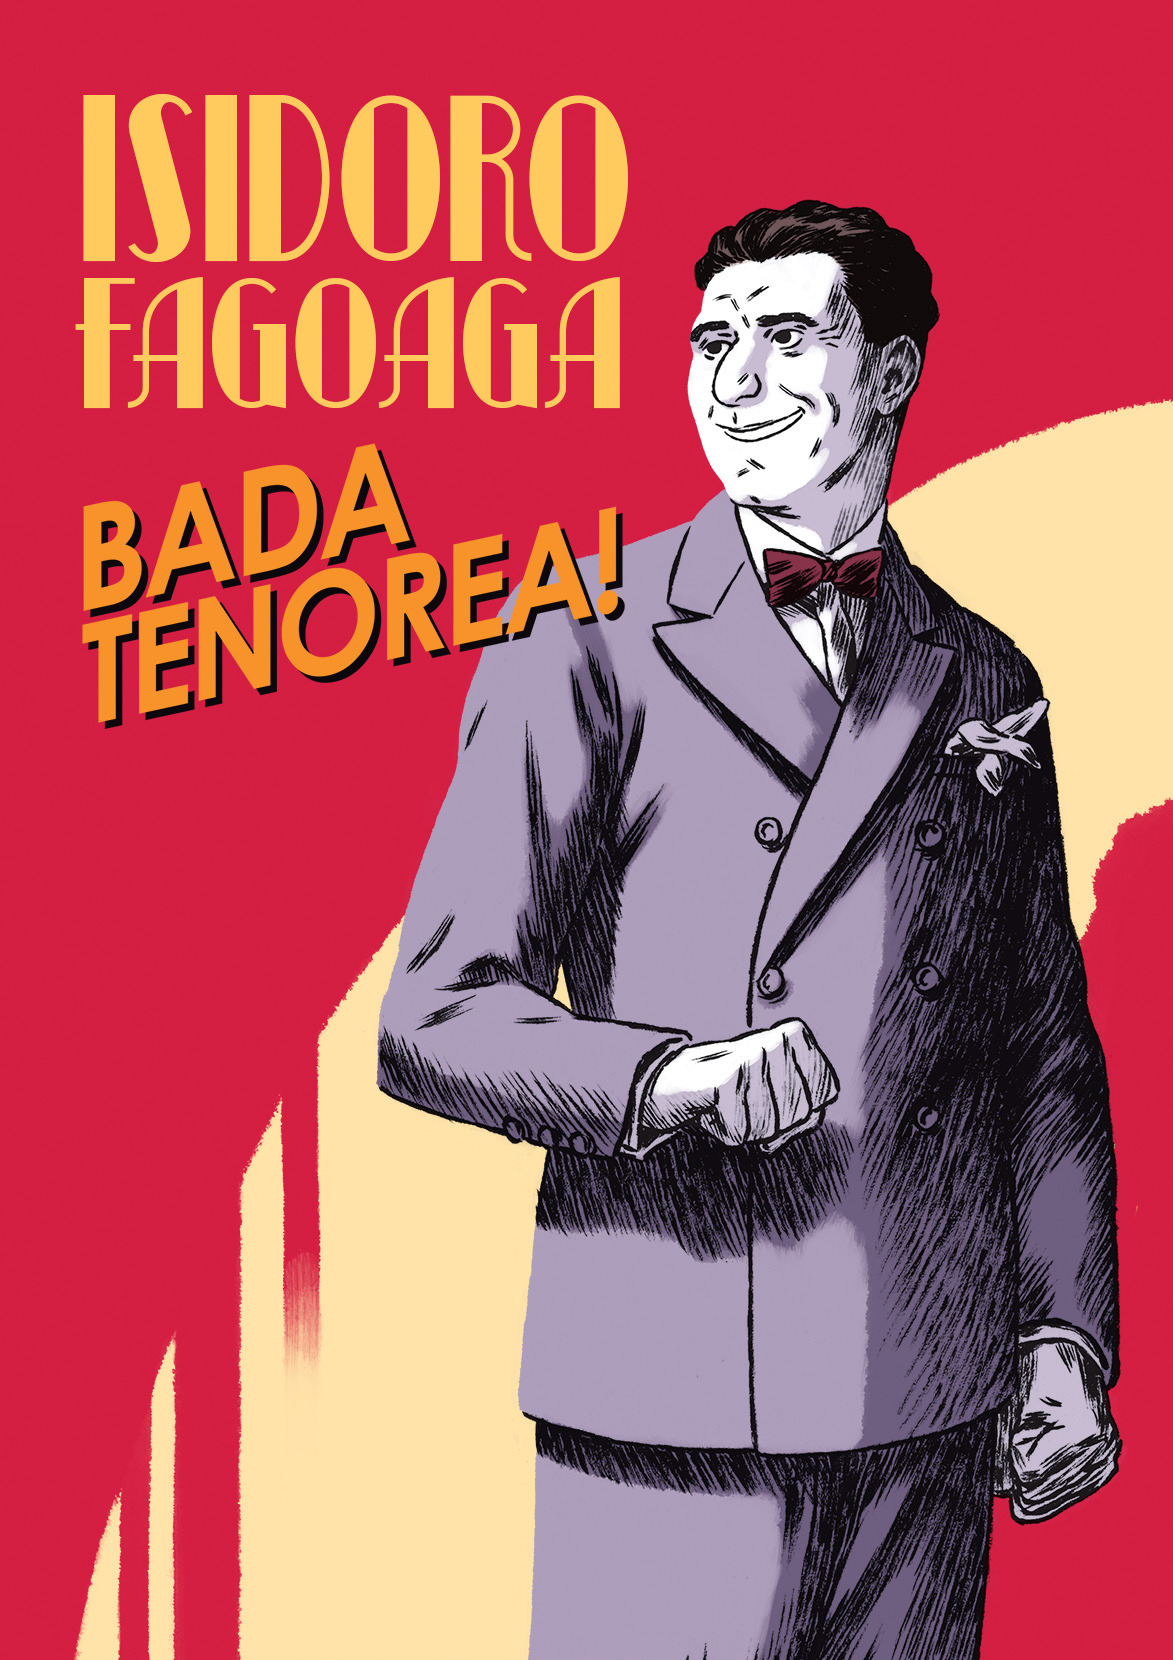 Bada tenorea!, Berako Isidoro Fagoaga tenorearen bizitza komikian